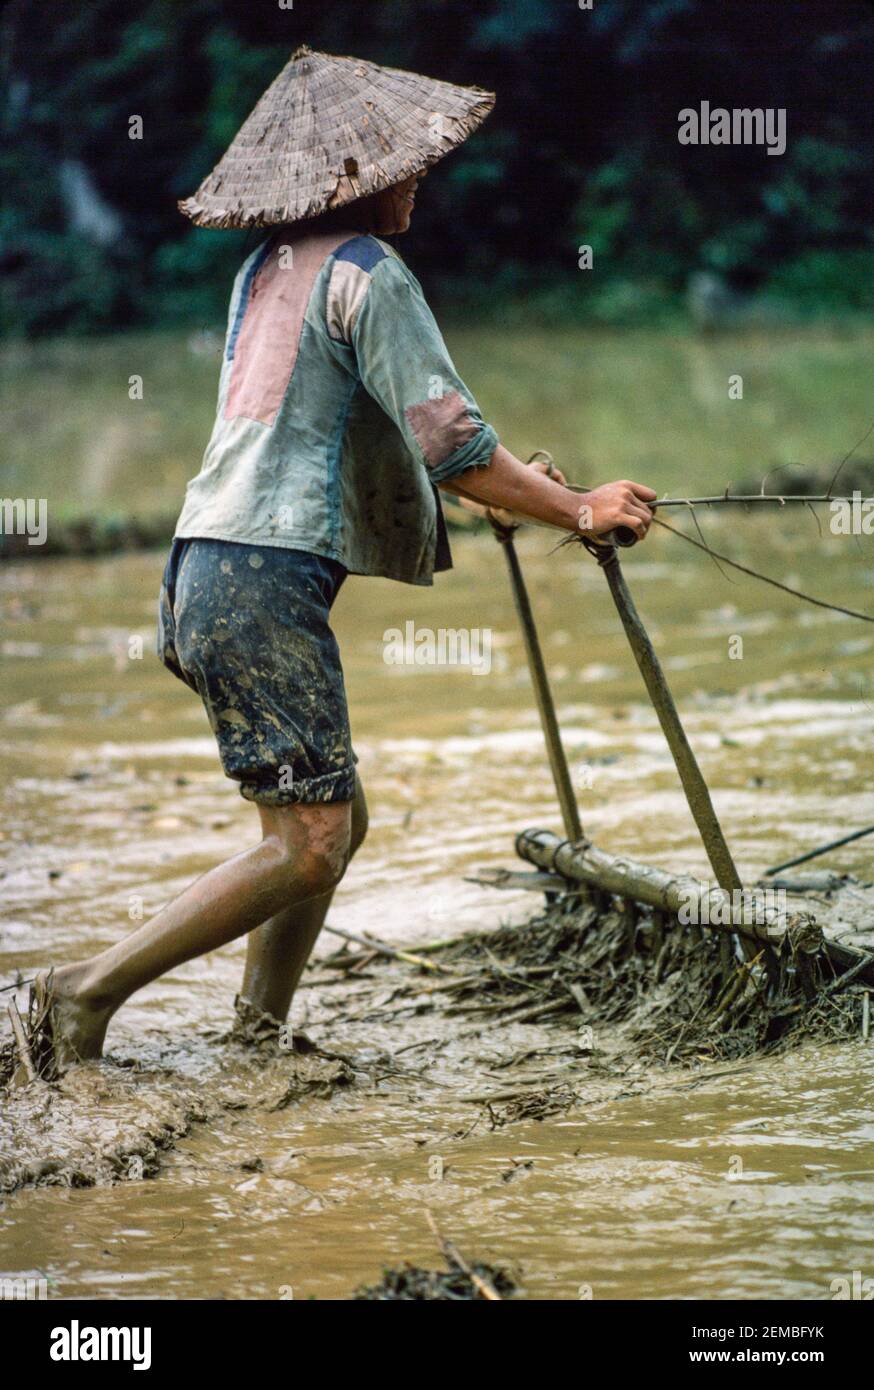 Trapianto di riso, Vietnam del Nord, giugno 1980 Foto Stock